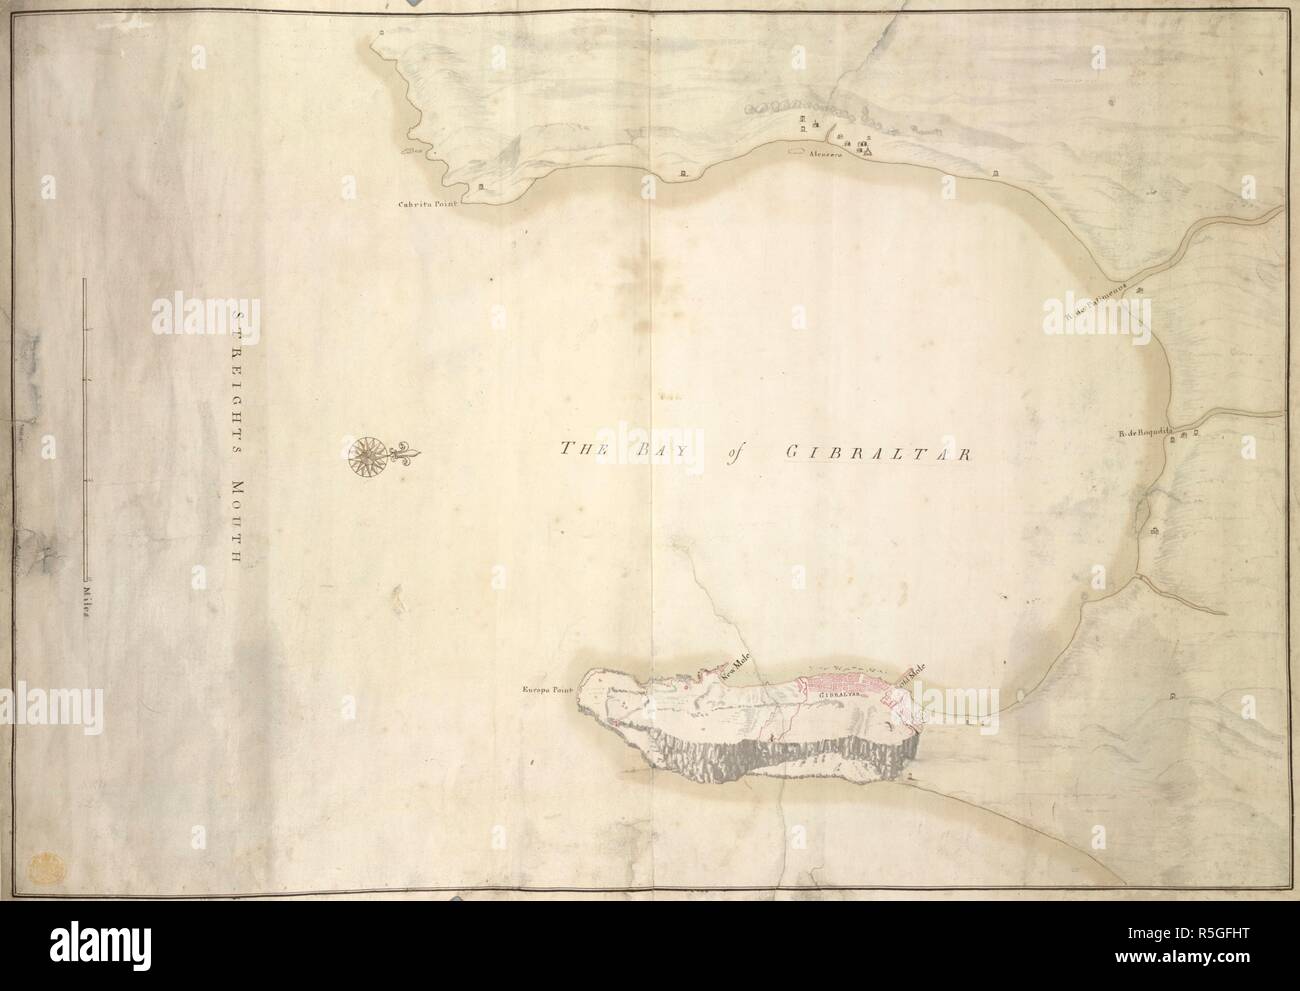 Einen Plan über die Bucht und Stadt von Gibraltar. Die Bucht von Gibraltar. [England]: [Produzenten nicht identifiziert], [zwischen 1690 und 1720?]. Quelle: Karten K. Top. 72.21. Sprache: Englisch. Stockfoto